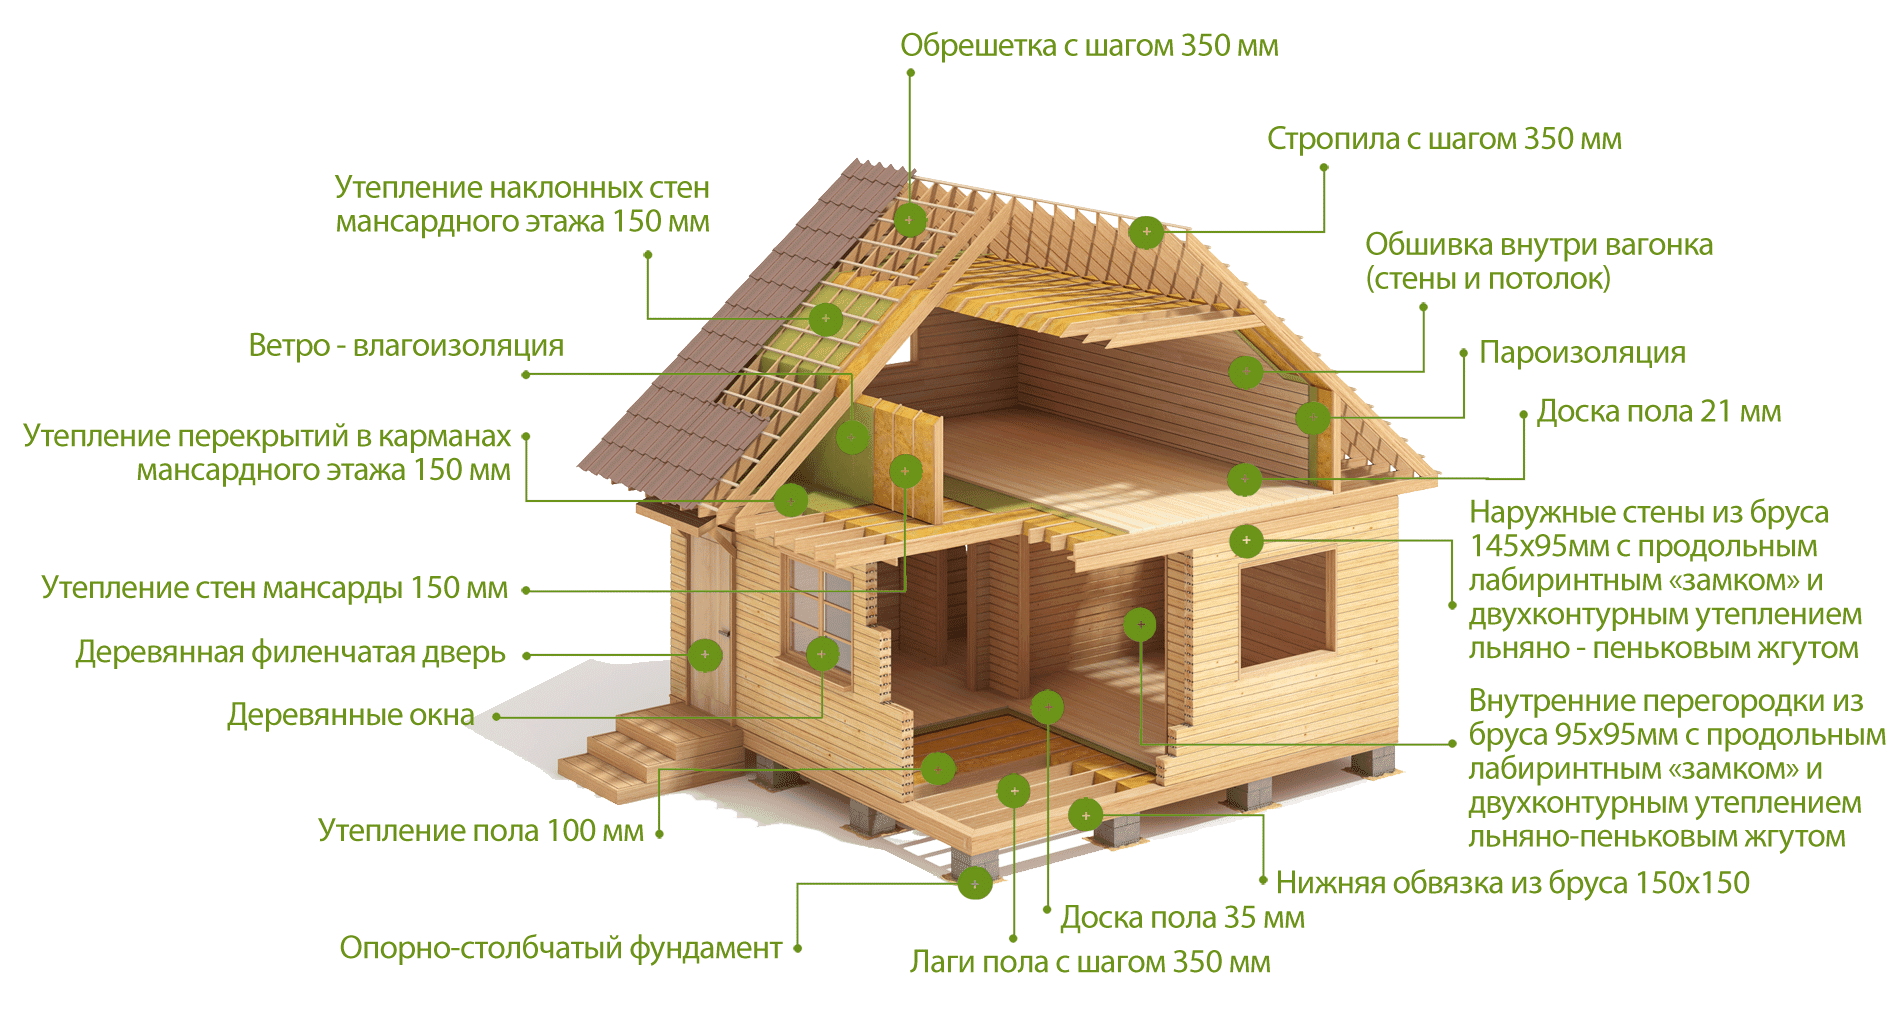 Дом из бруса: как построить, можно ли своими руками, технология, проект, стоимость